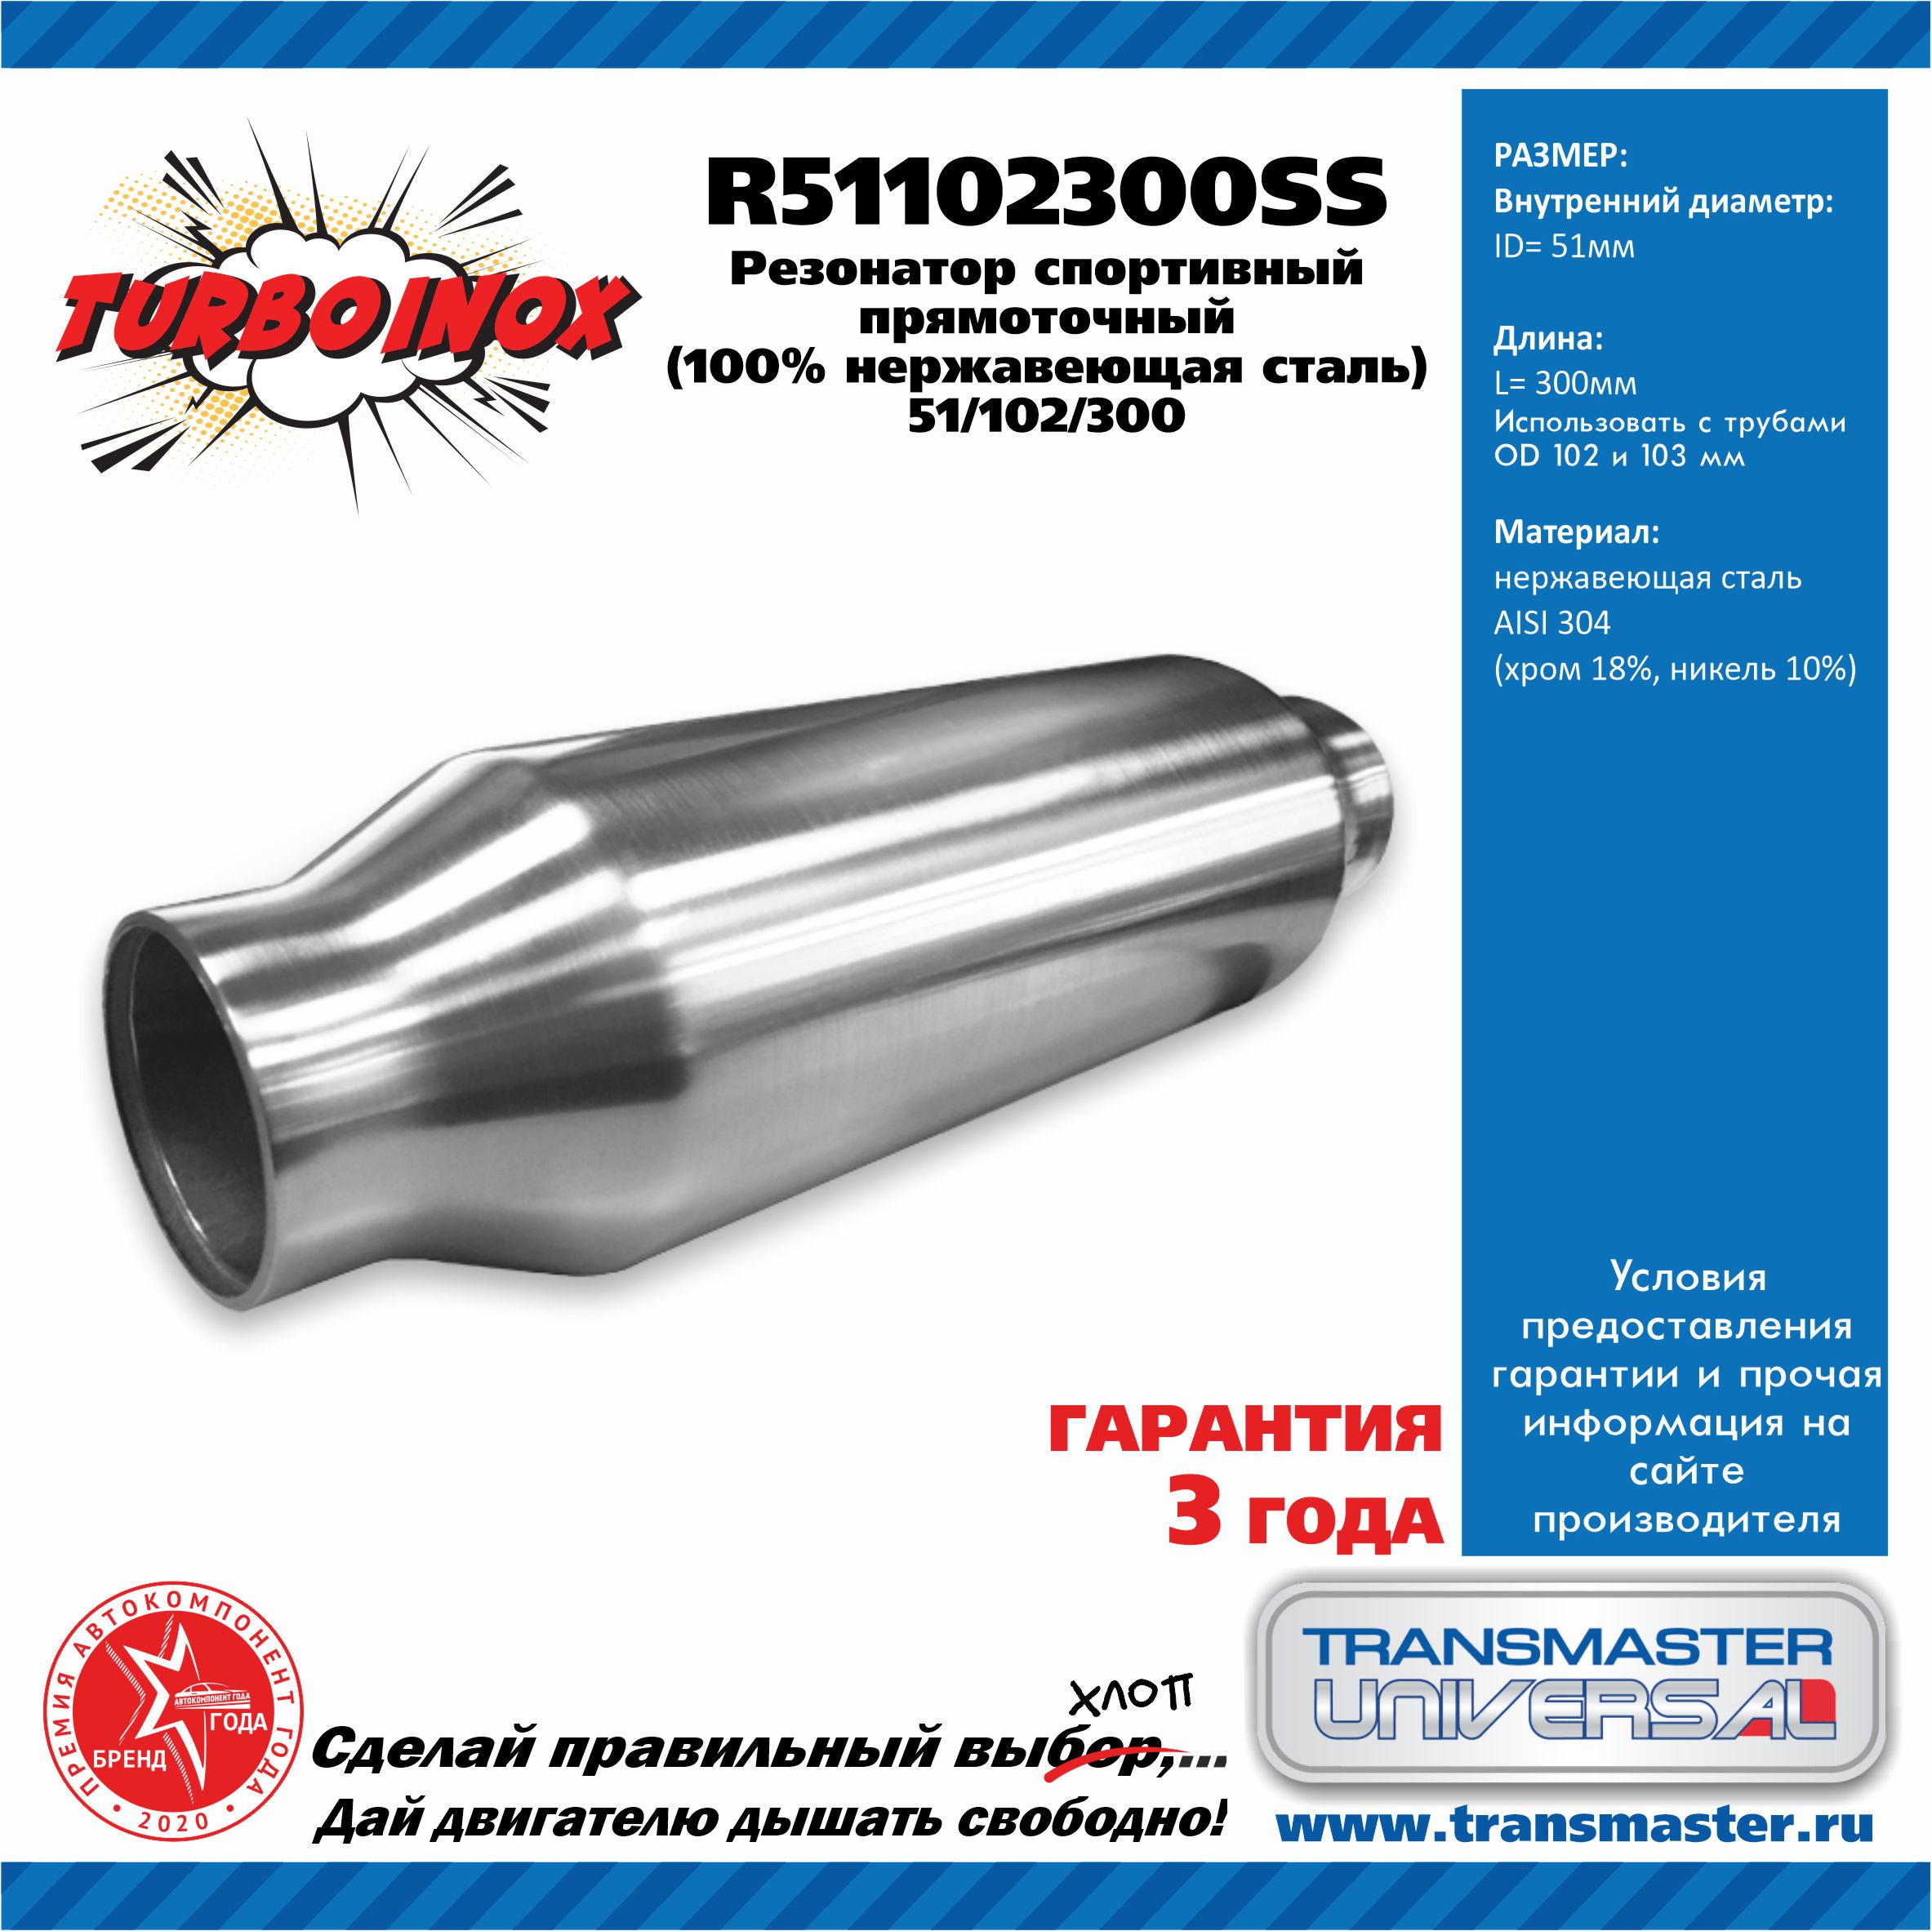 Резонатор спортивный прямоточный серия turboinox (100% нержавеющая сталь) - TRANSMASTER UNIVERSAL R51102300SS